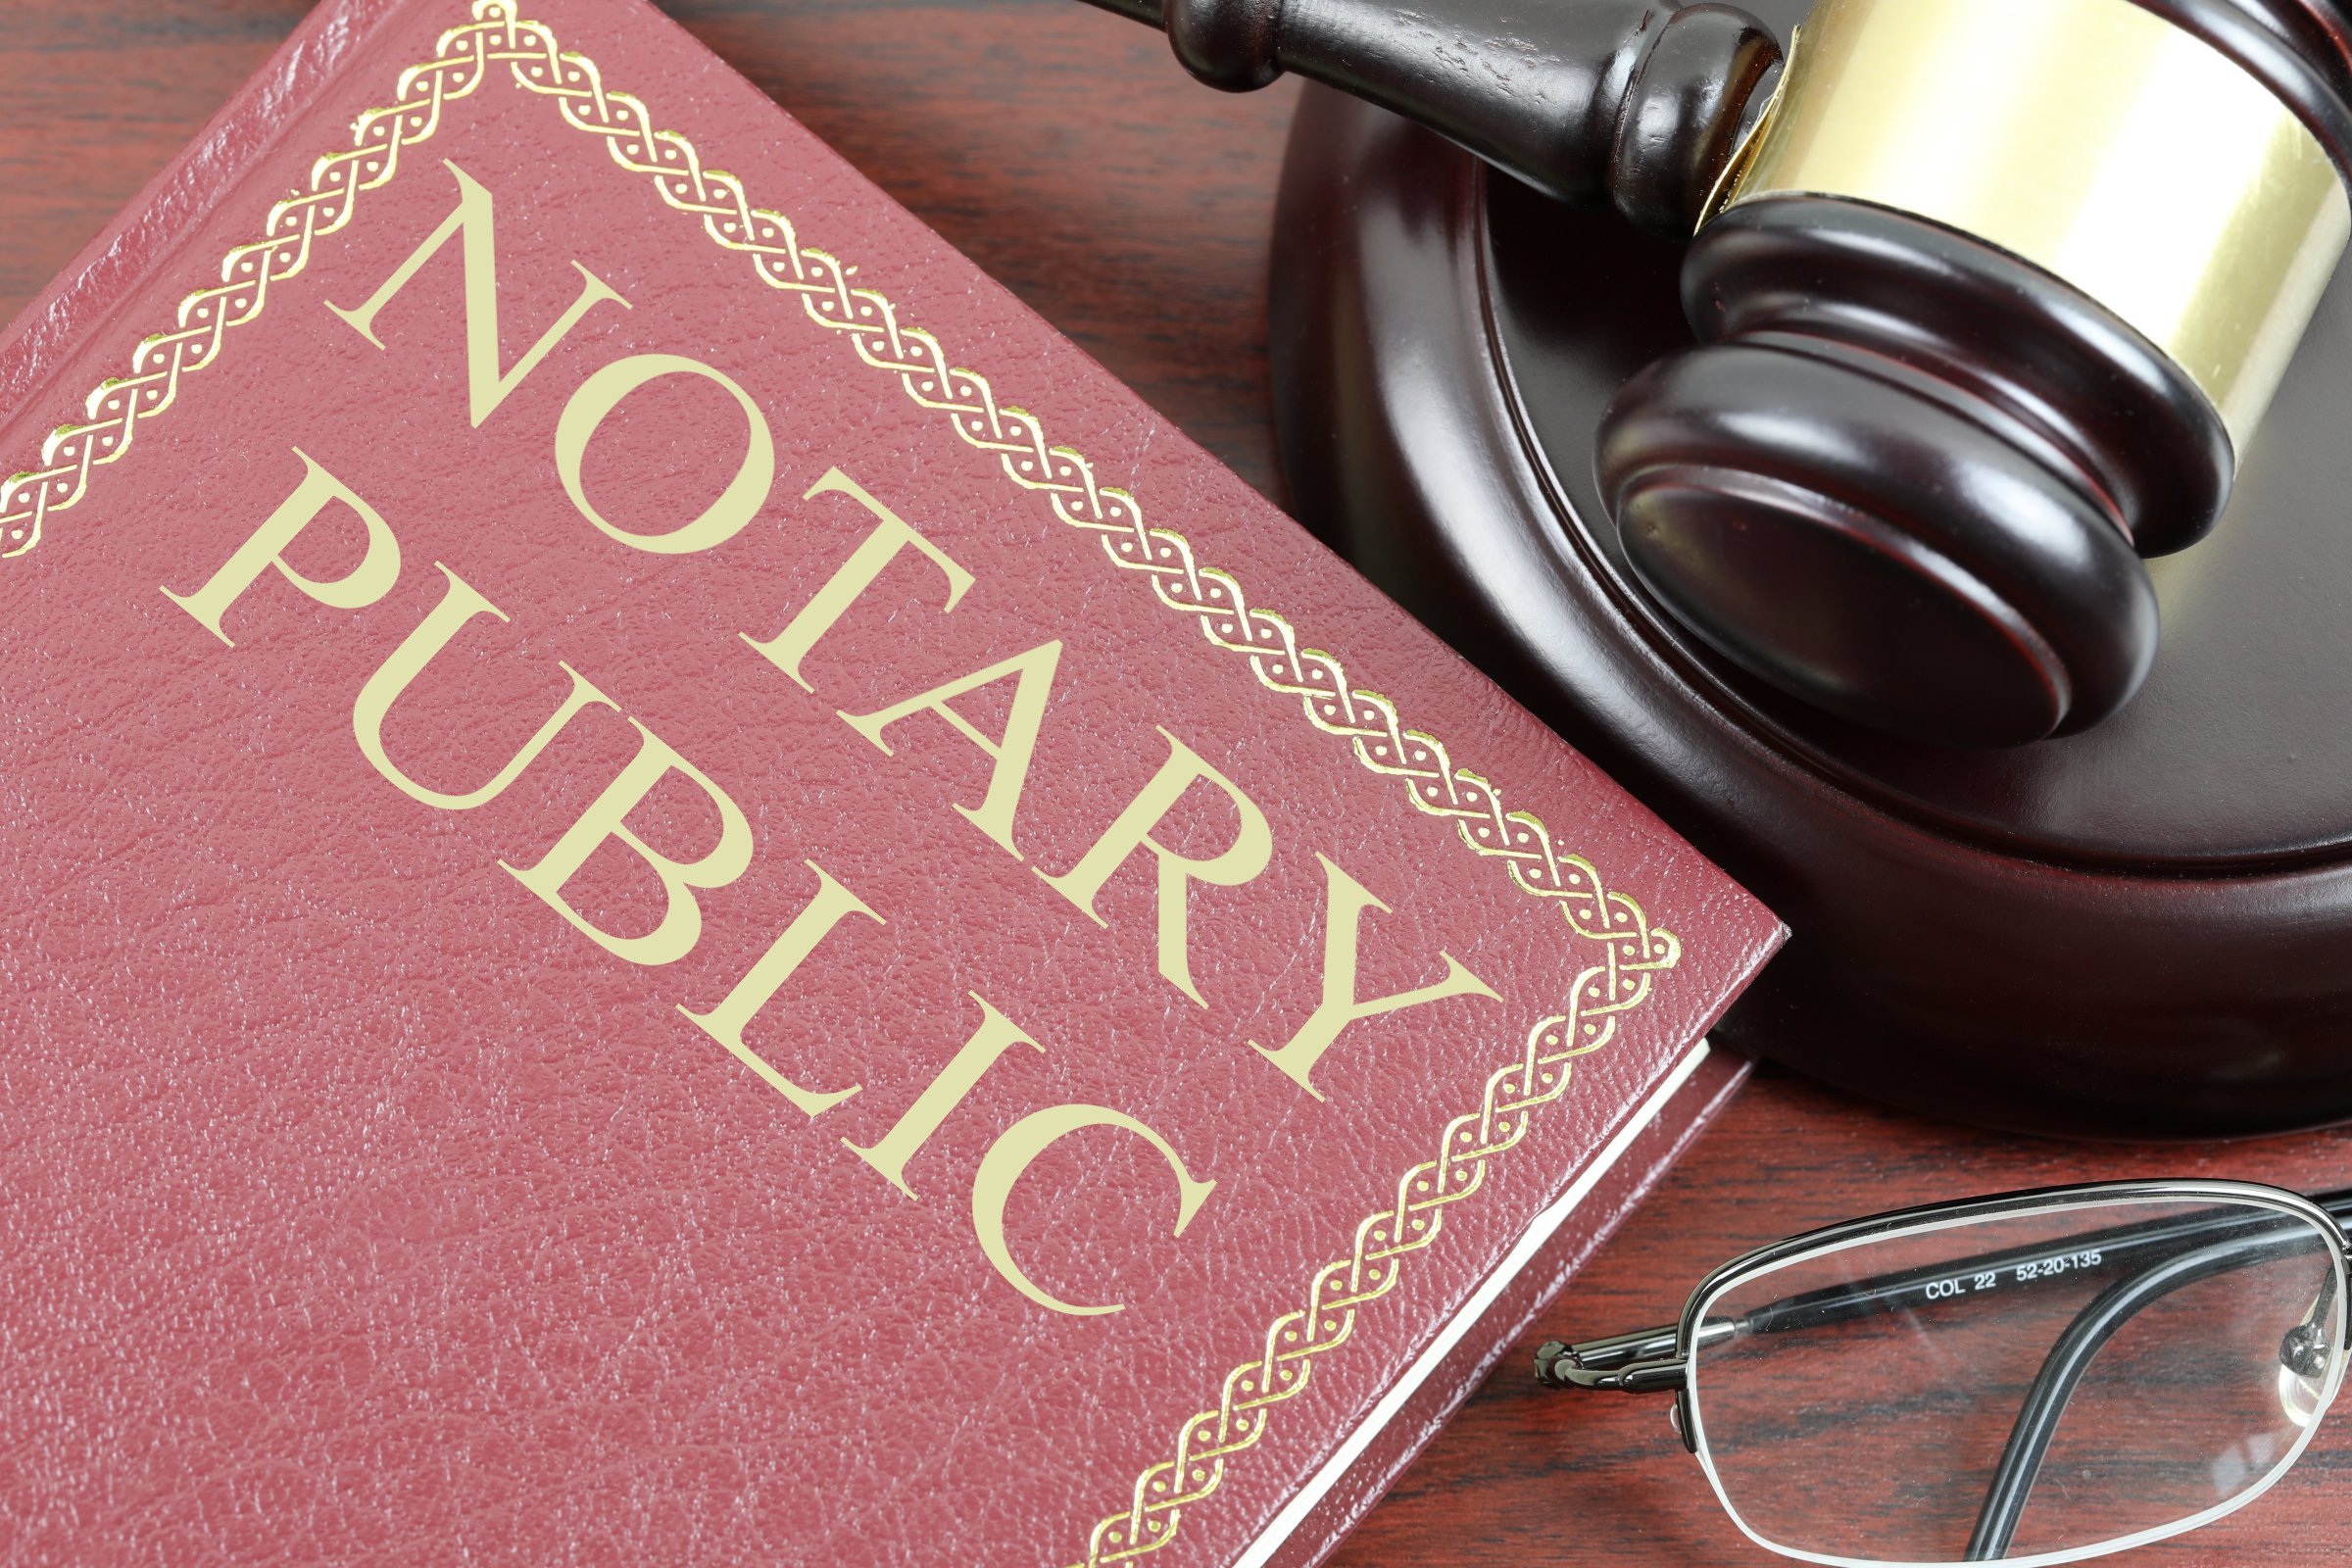 Notary Public Oath